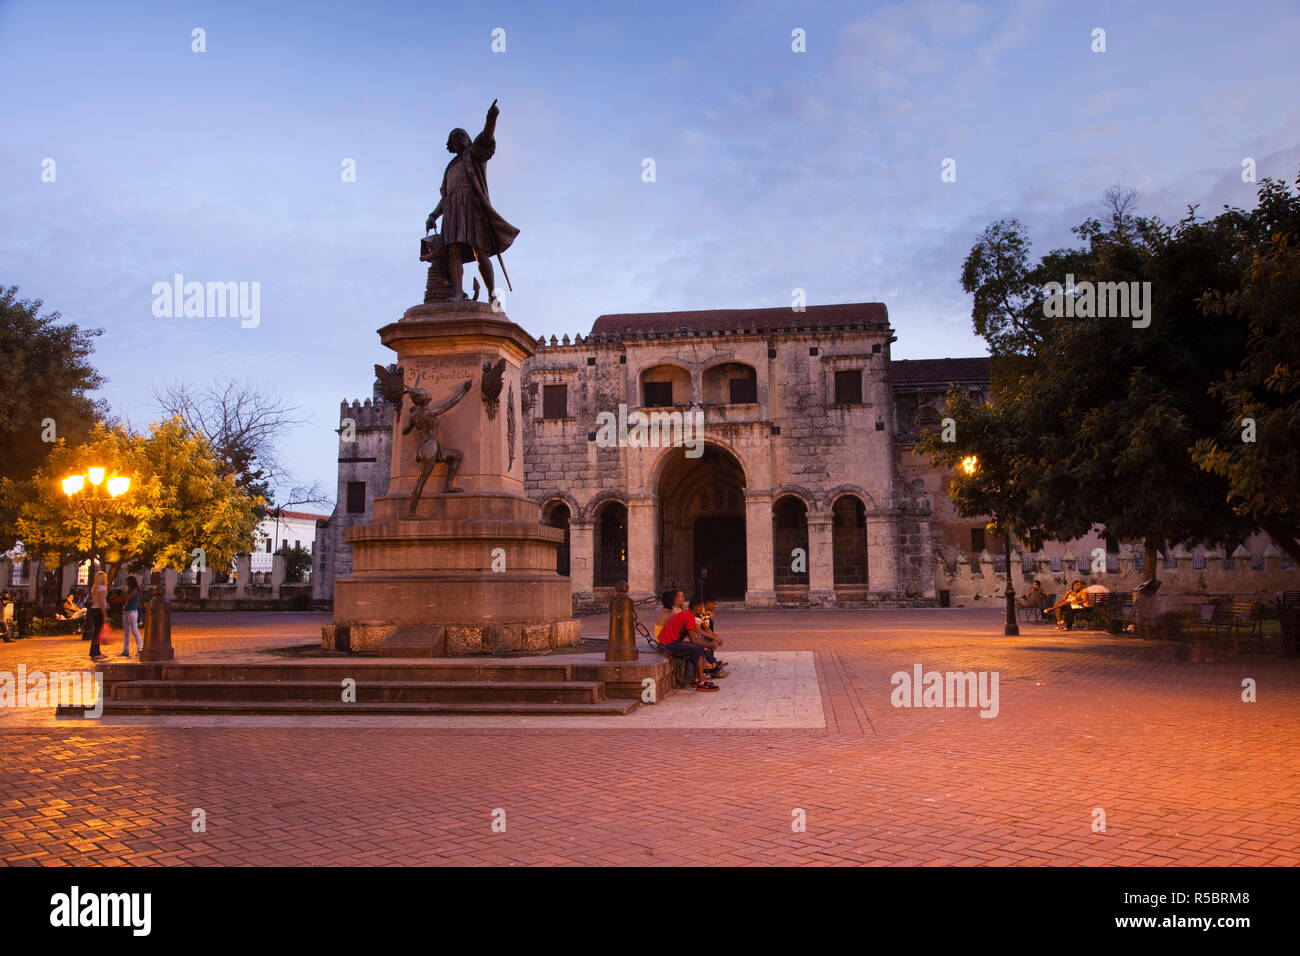 Dominikanische Republik, Santo Domingo, Zona Colonial, Statue von Columbus und Catedral Primada de America Kathedrale Stockfoto